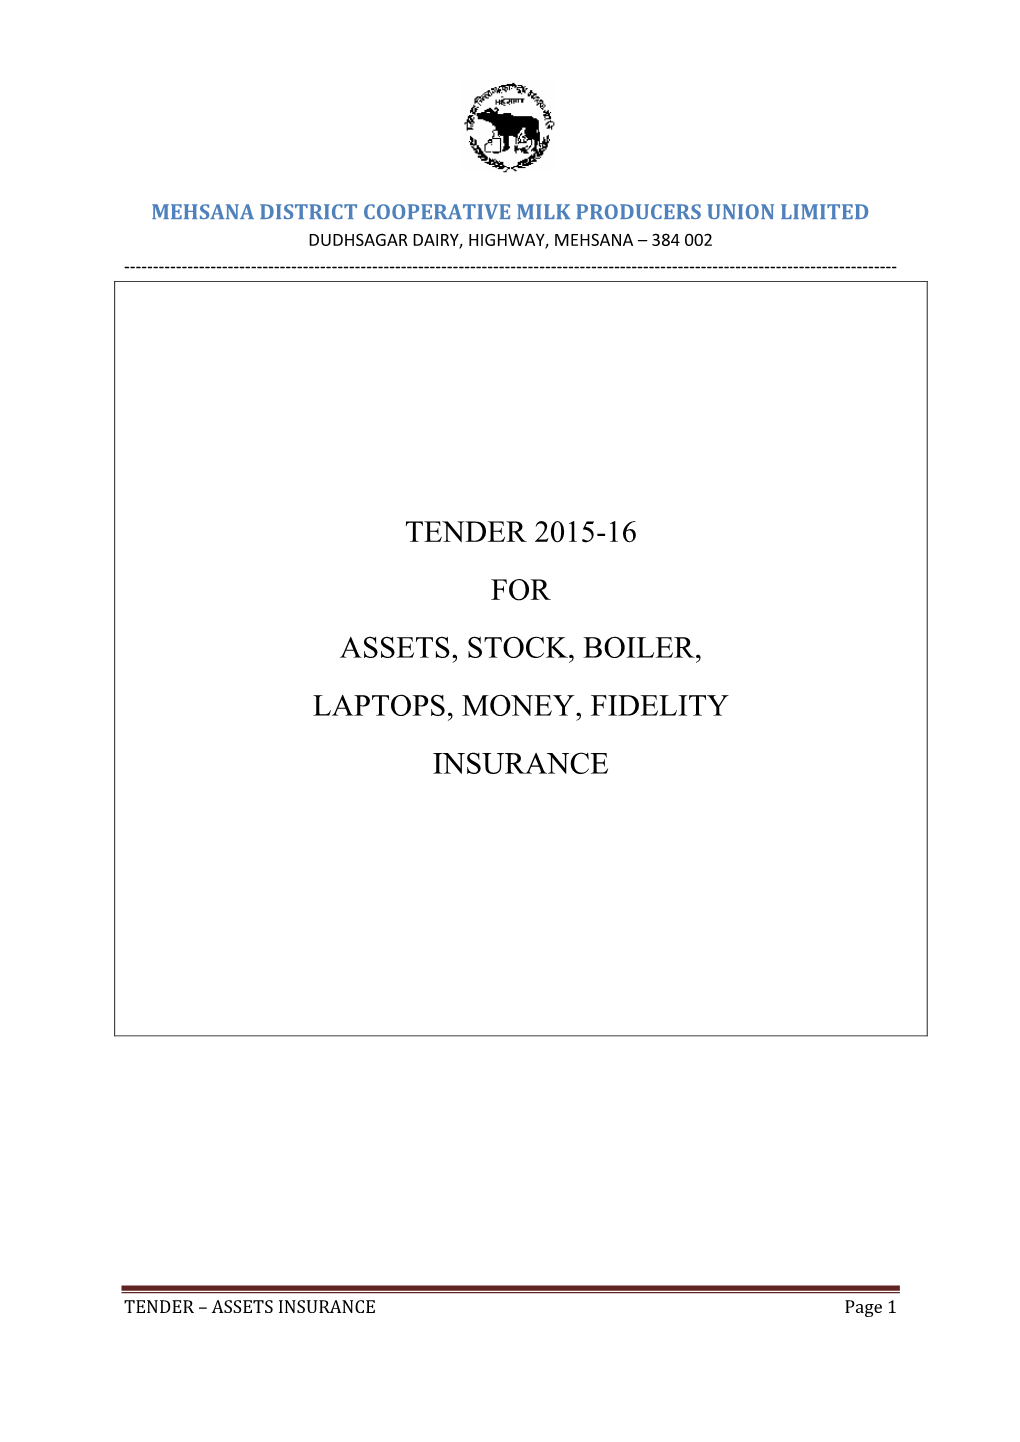 Tender 2015-16 for Assets, Stock, Boiler, Laptops, Money, Fidelity Insurance